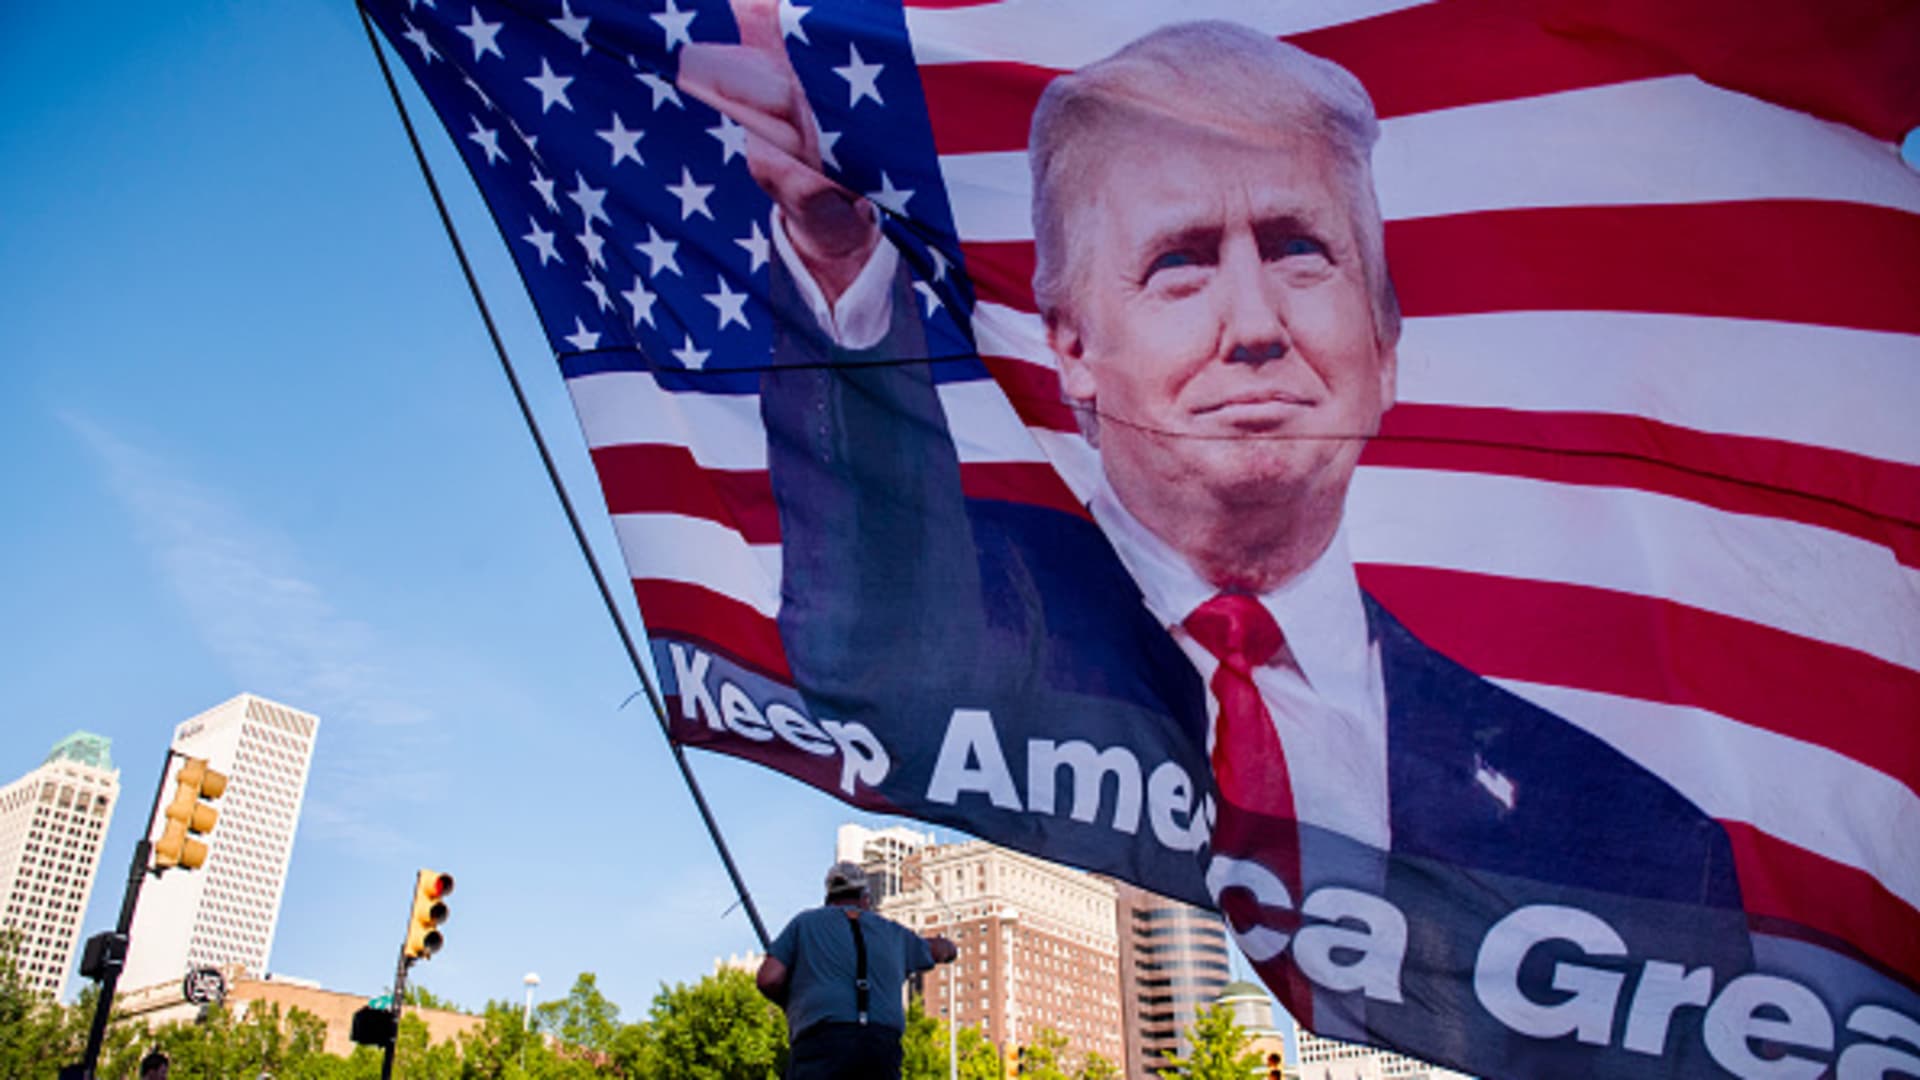 Randal Thom, 60, of Minnesota, waves an oversized flag of U.S. President Donald Trump outside the BOK Center in Tulsa, Oklahoma, on Thursday, June 18, 2020.